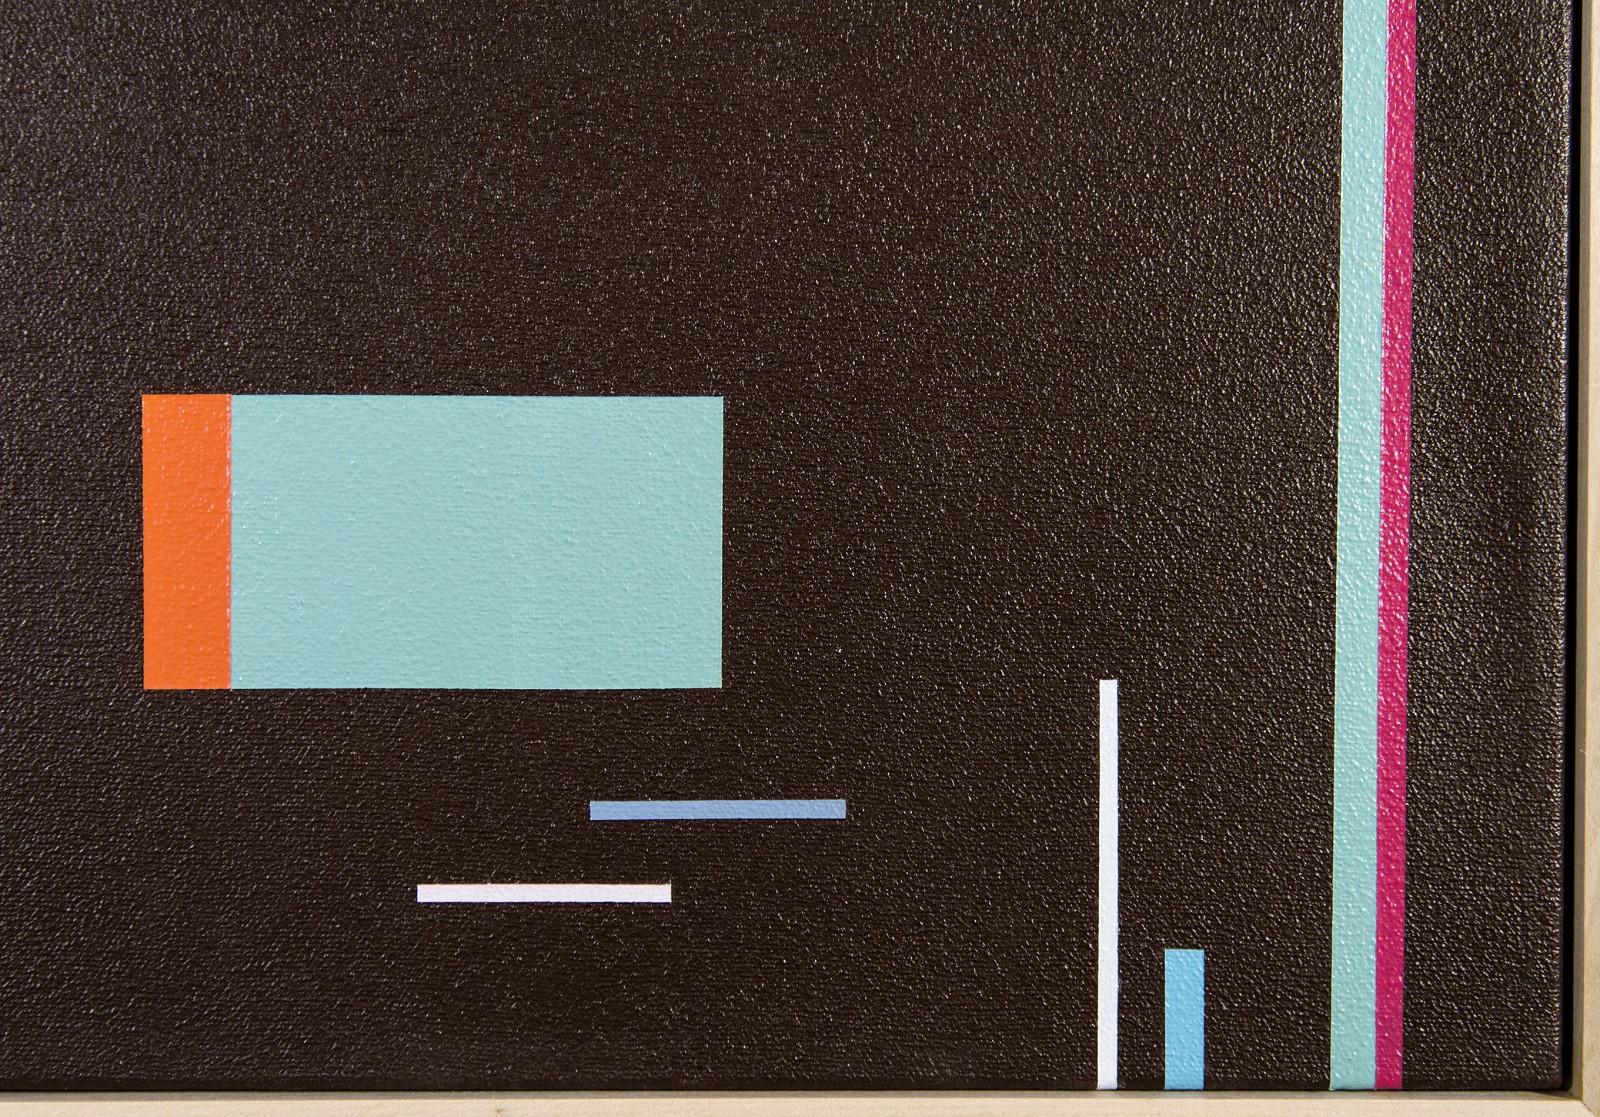 Epiphany 6 - abstraction géométrique audacieuse et colorée, moderniste, acrylique sur toile - Contemporain Painting par Burton Kramer